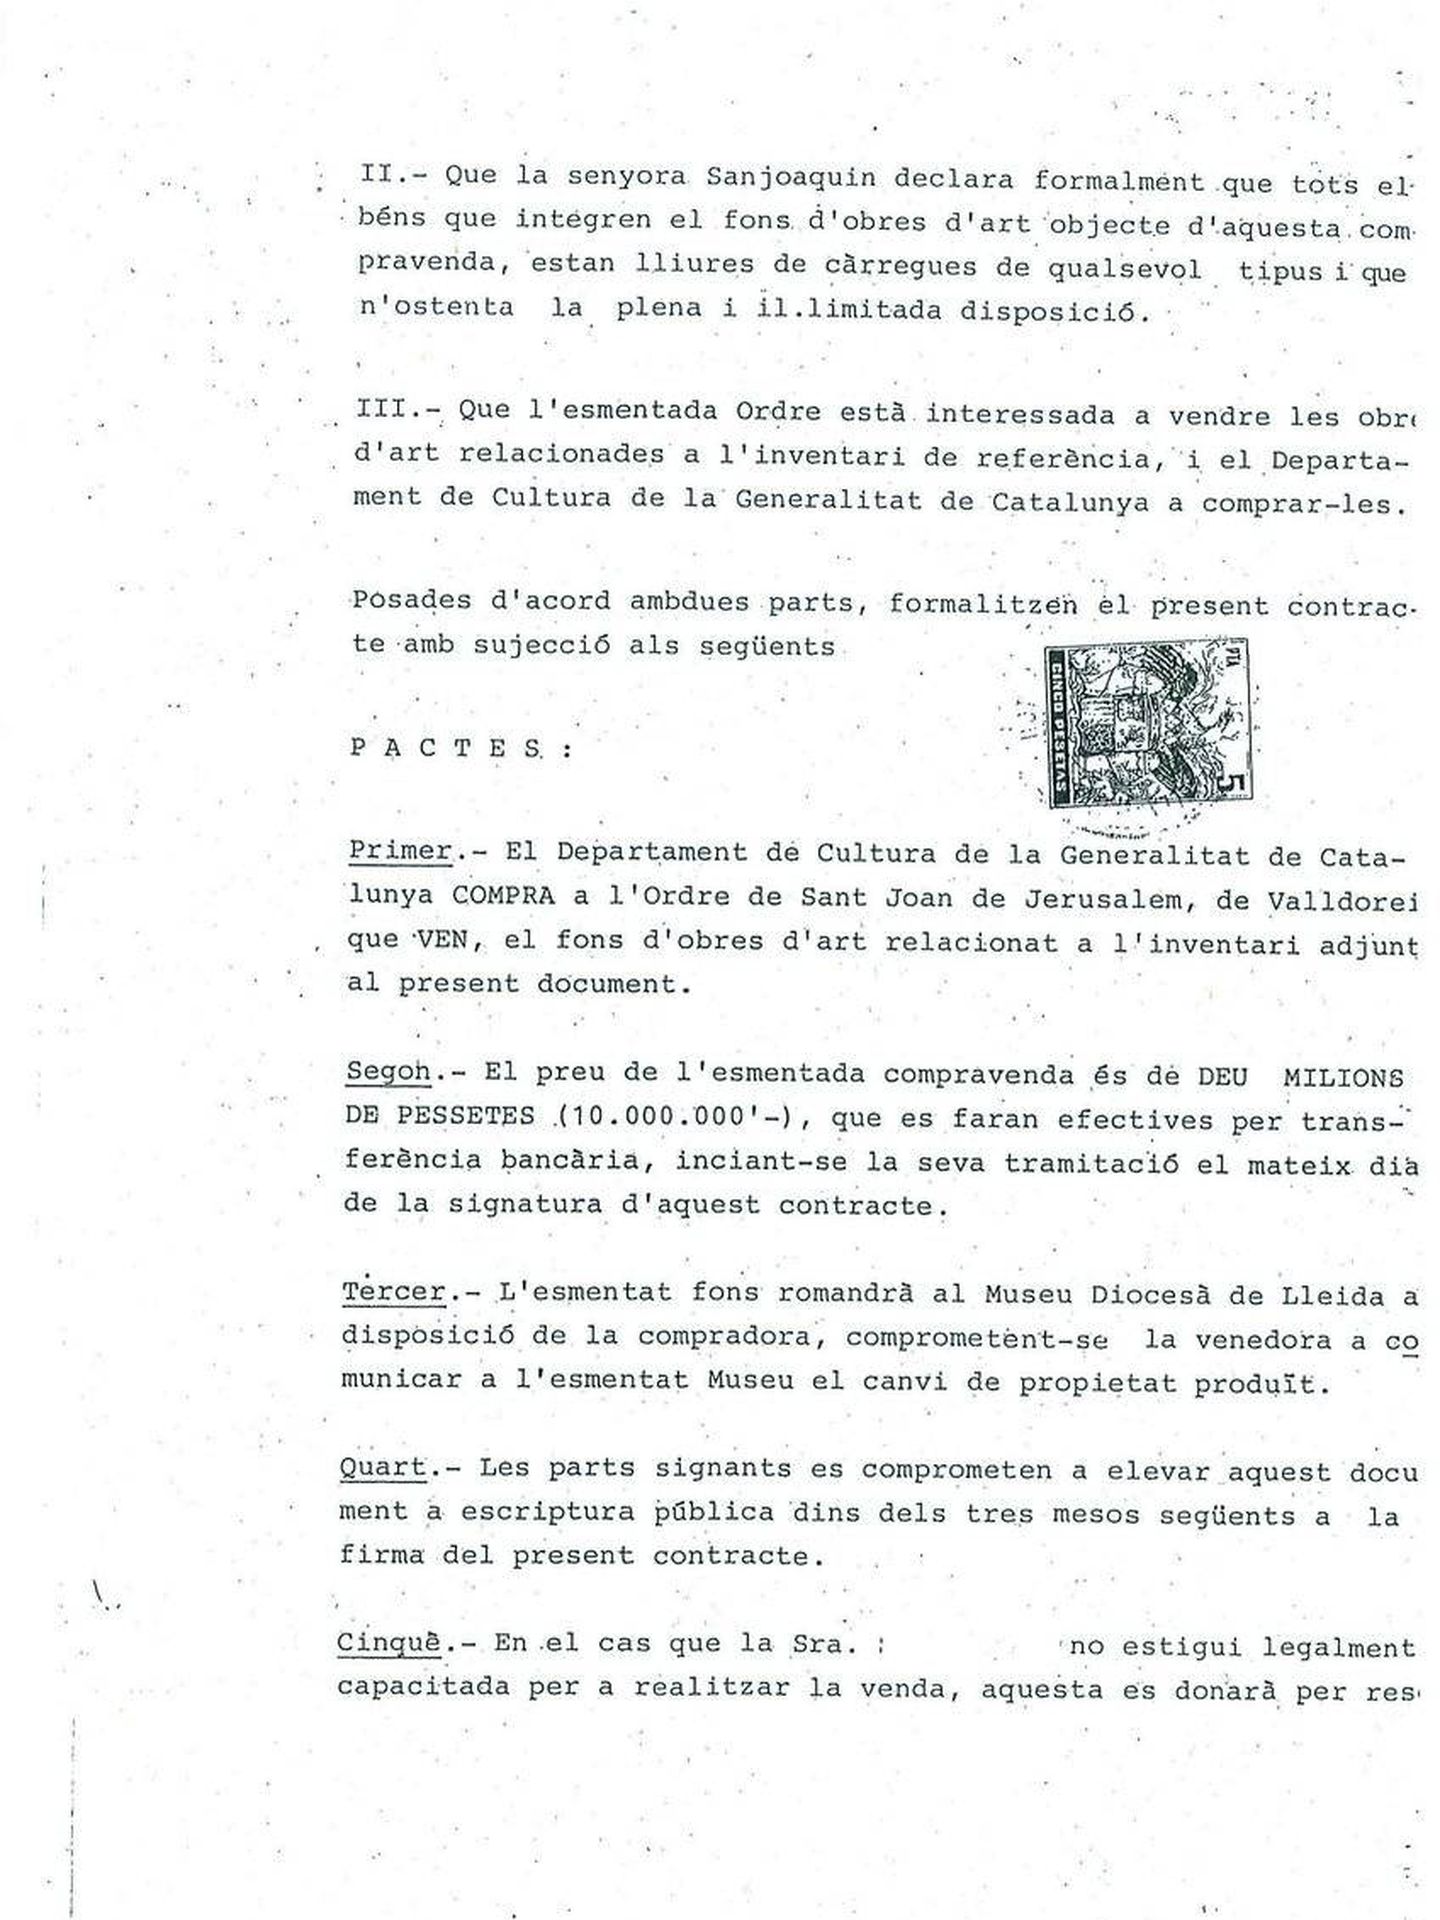 Documento de compra-venta de las obras de Sijena (2)